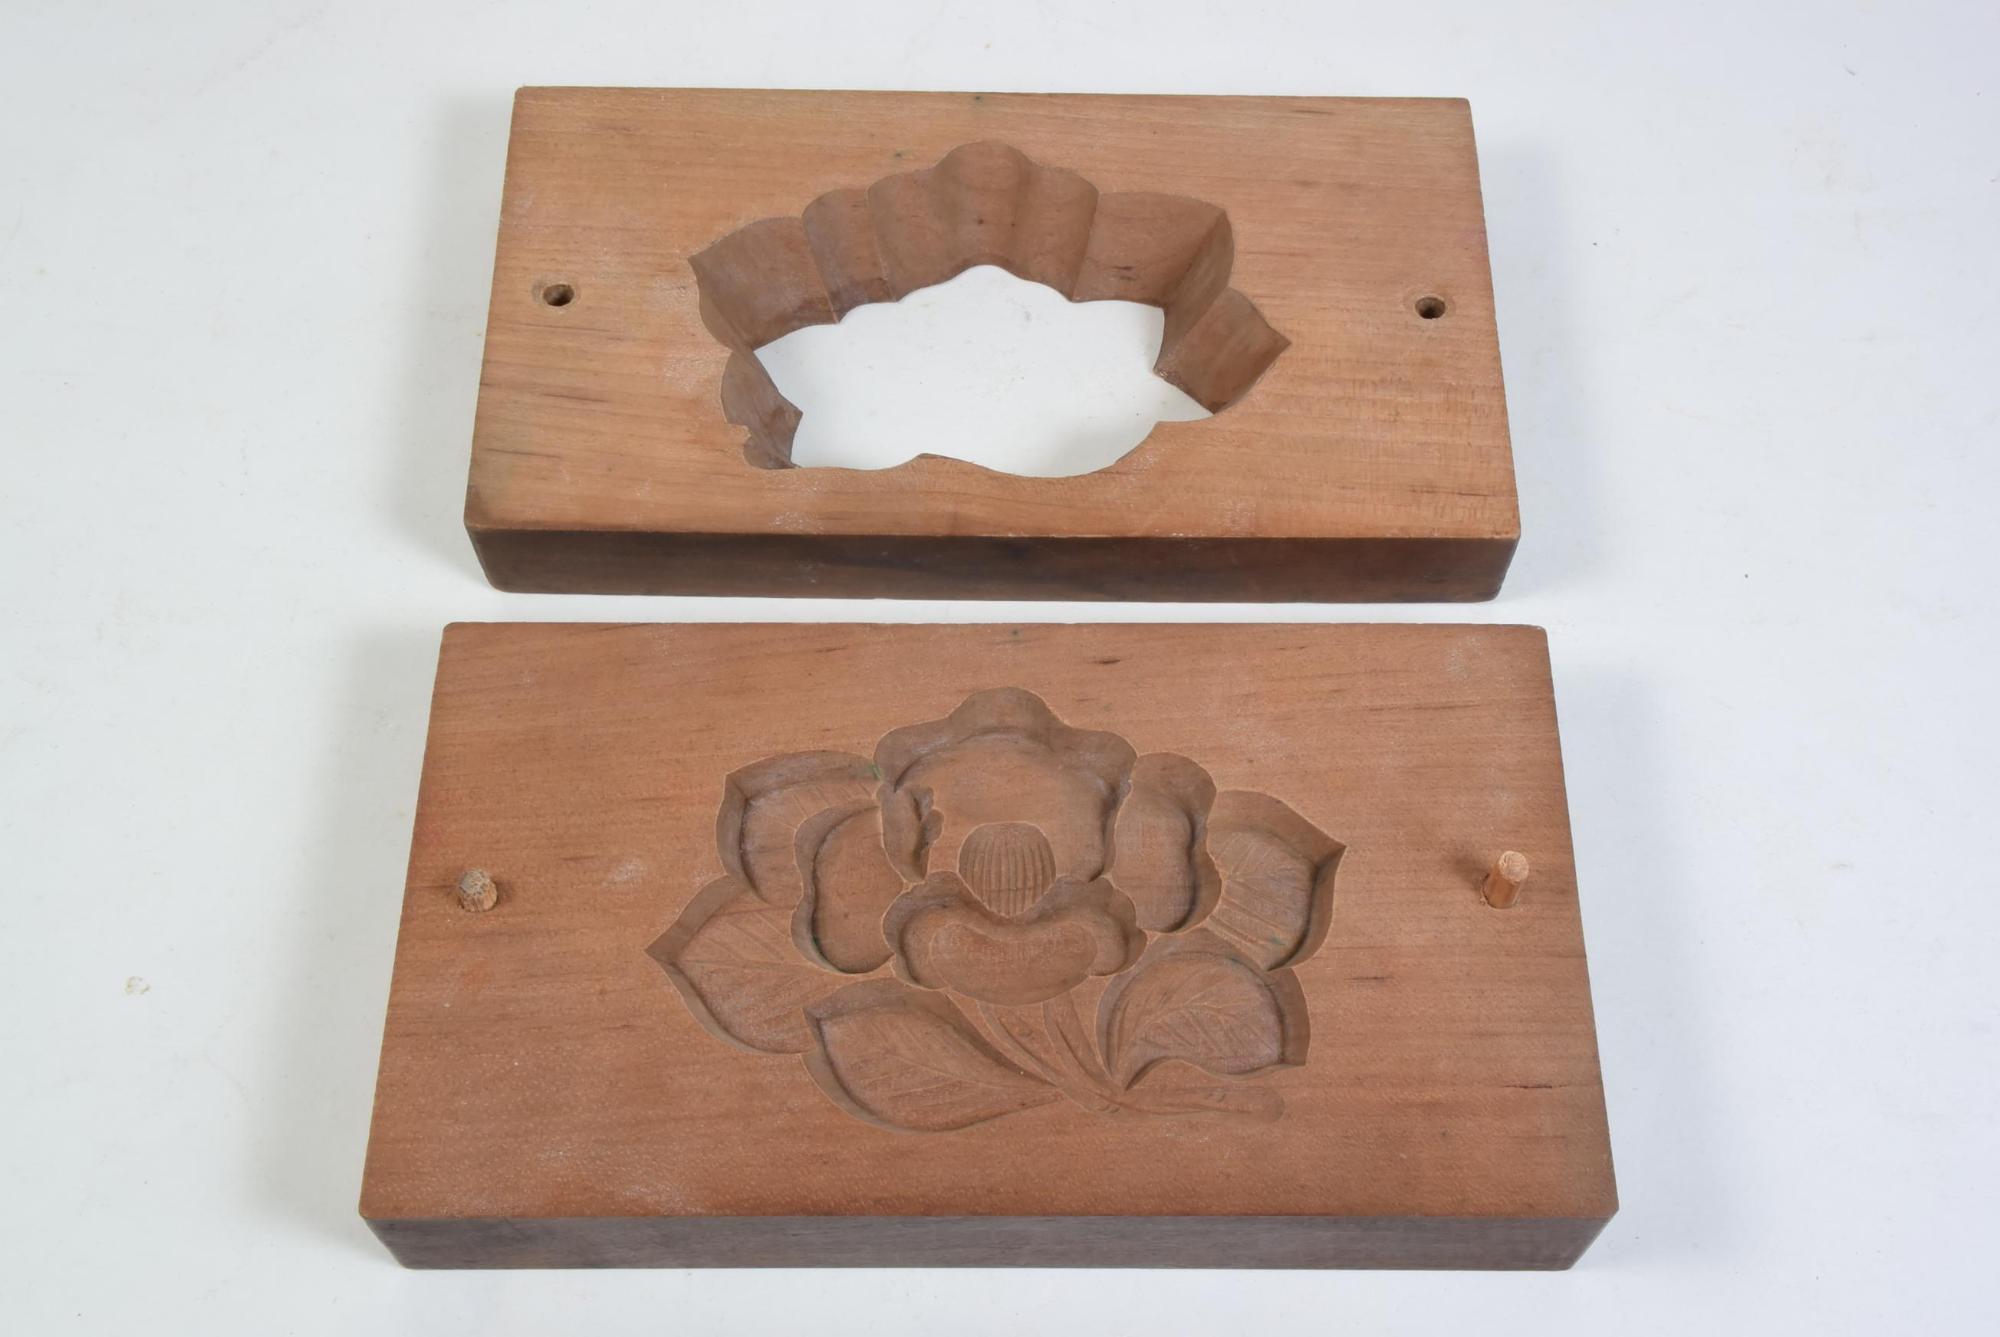 1枚はつばきの花の形に板をくり抜いた型、もう1枚は椿の花の形が掘ってある板が並べて置いてあるツバキの花の打菓子の型の写真